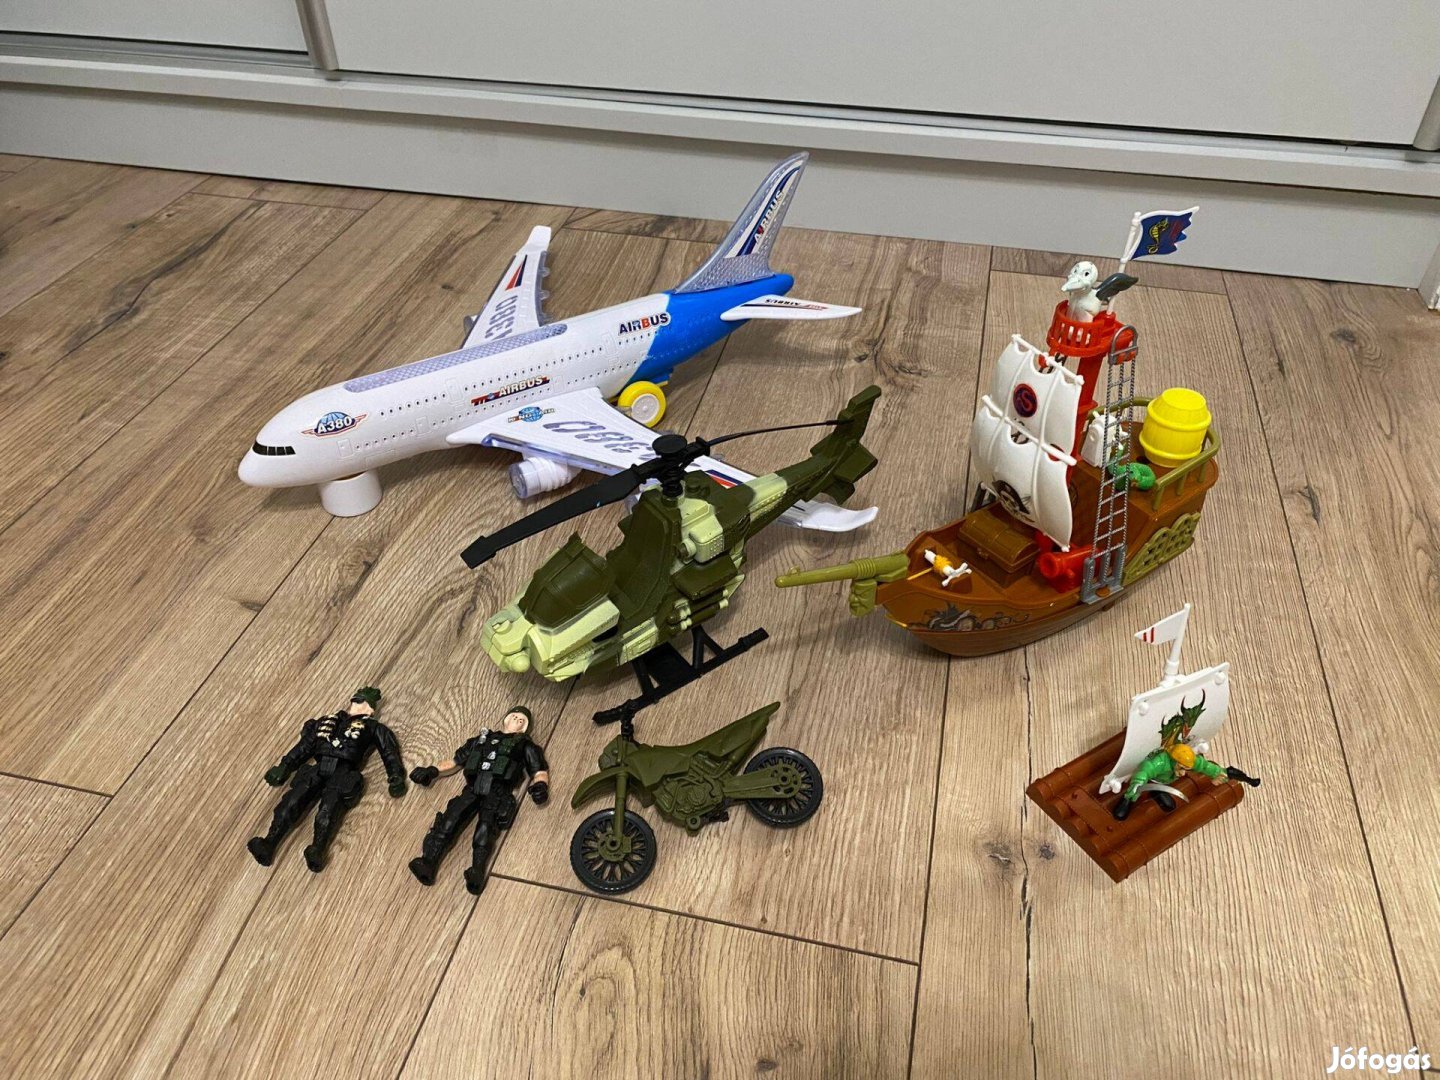 Új játékok (Airbus, katonai szett, kalózhajó)